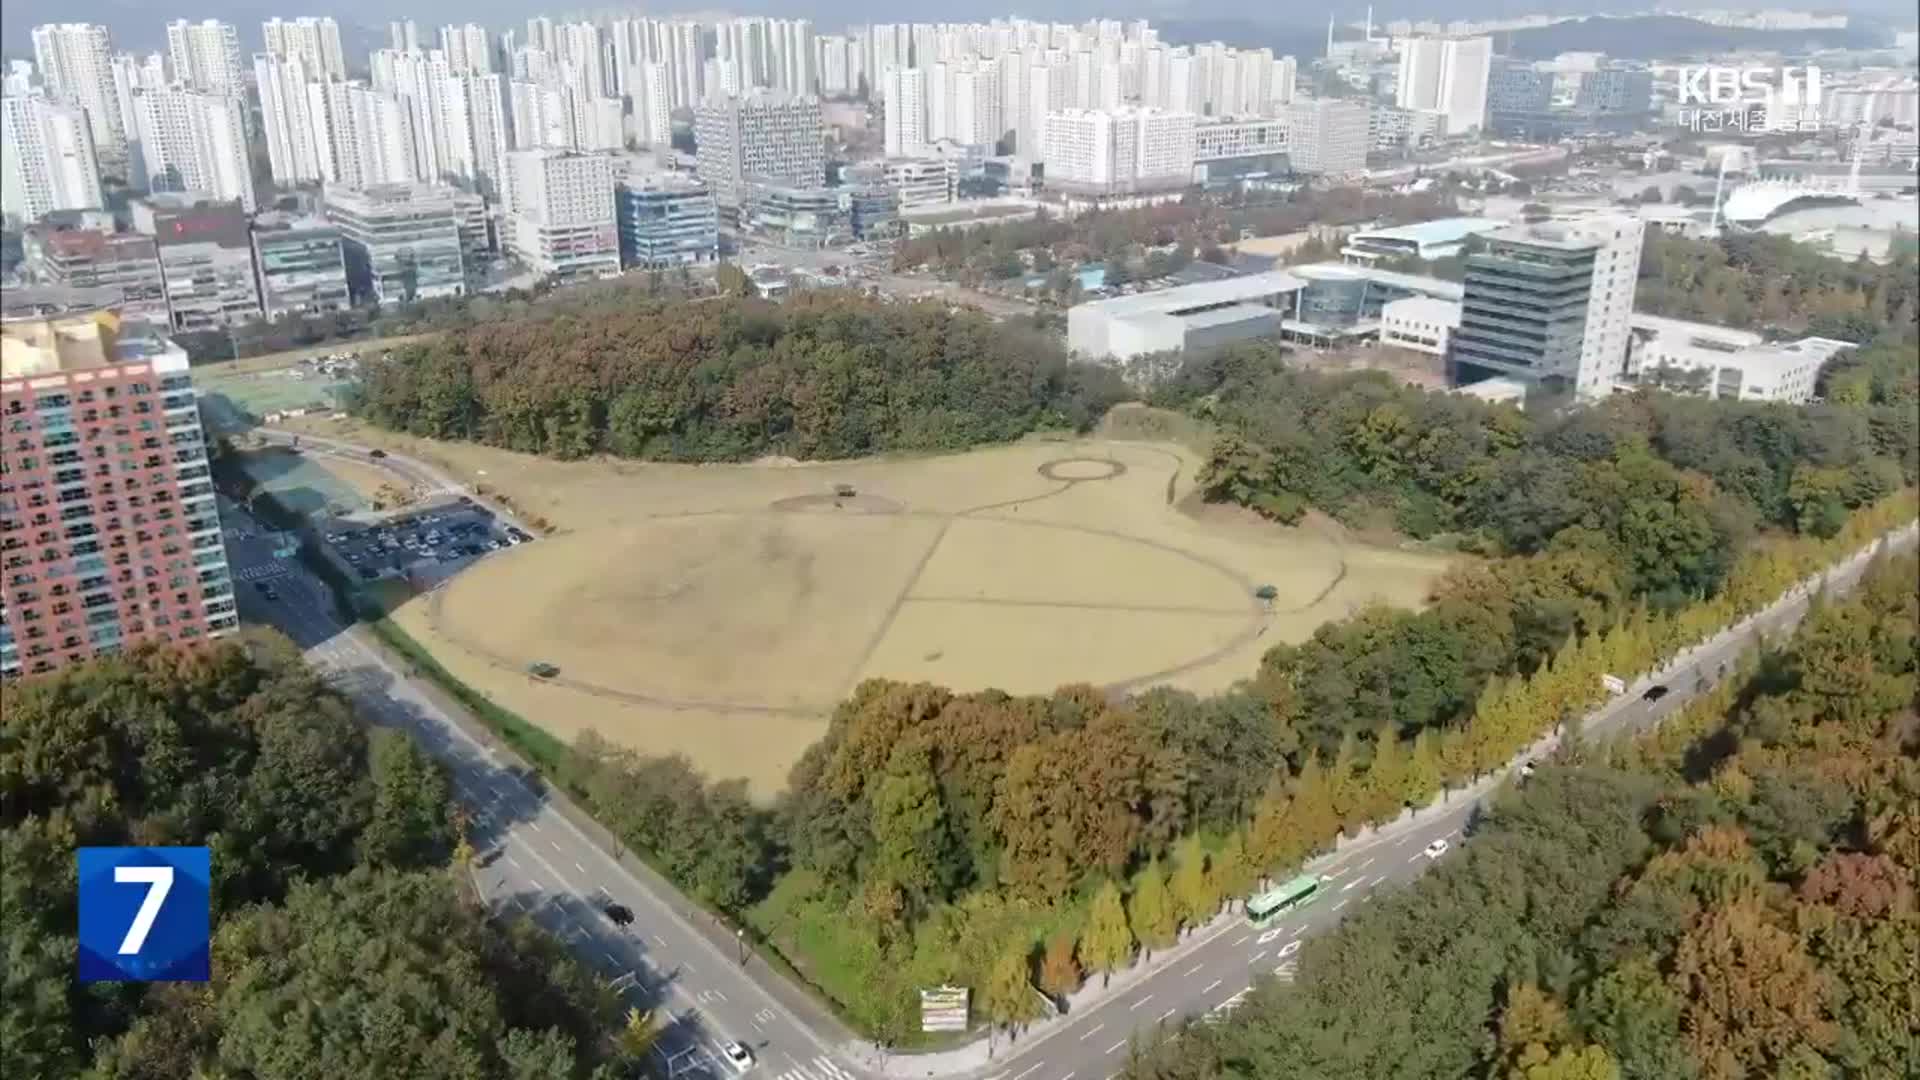 1조 세외수입 vs 수천억 특혜…시민체육공원 개발 논란